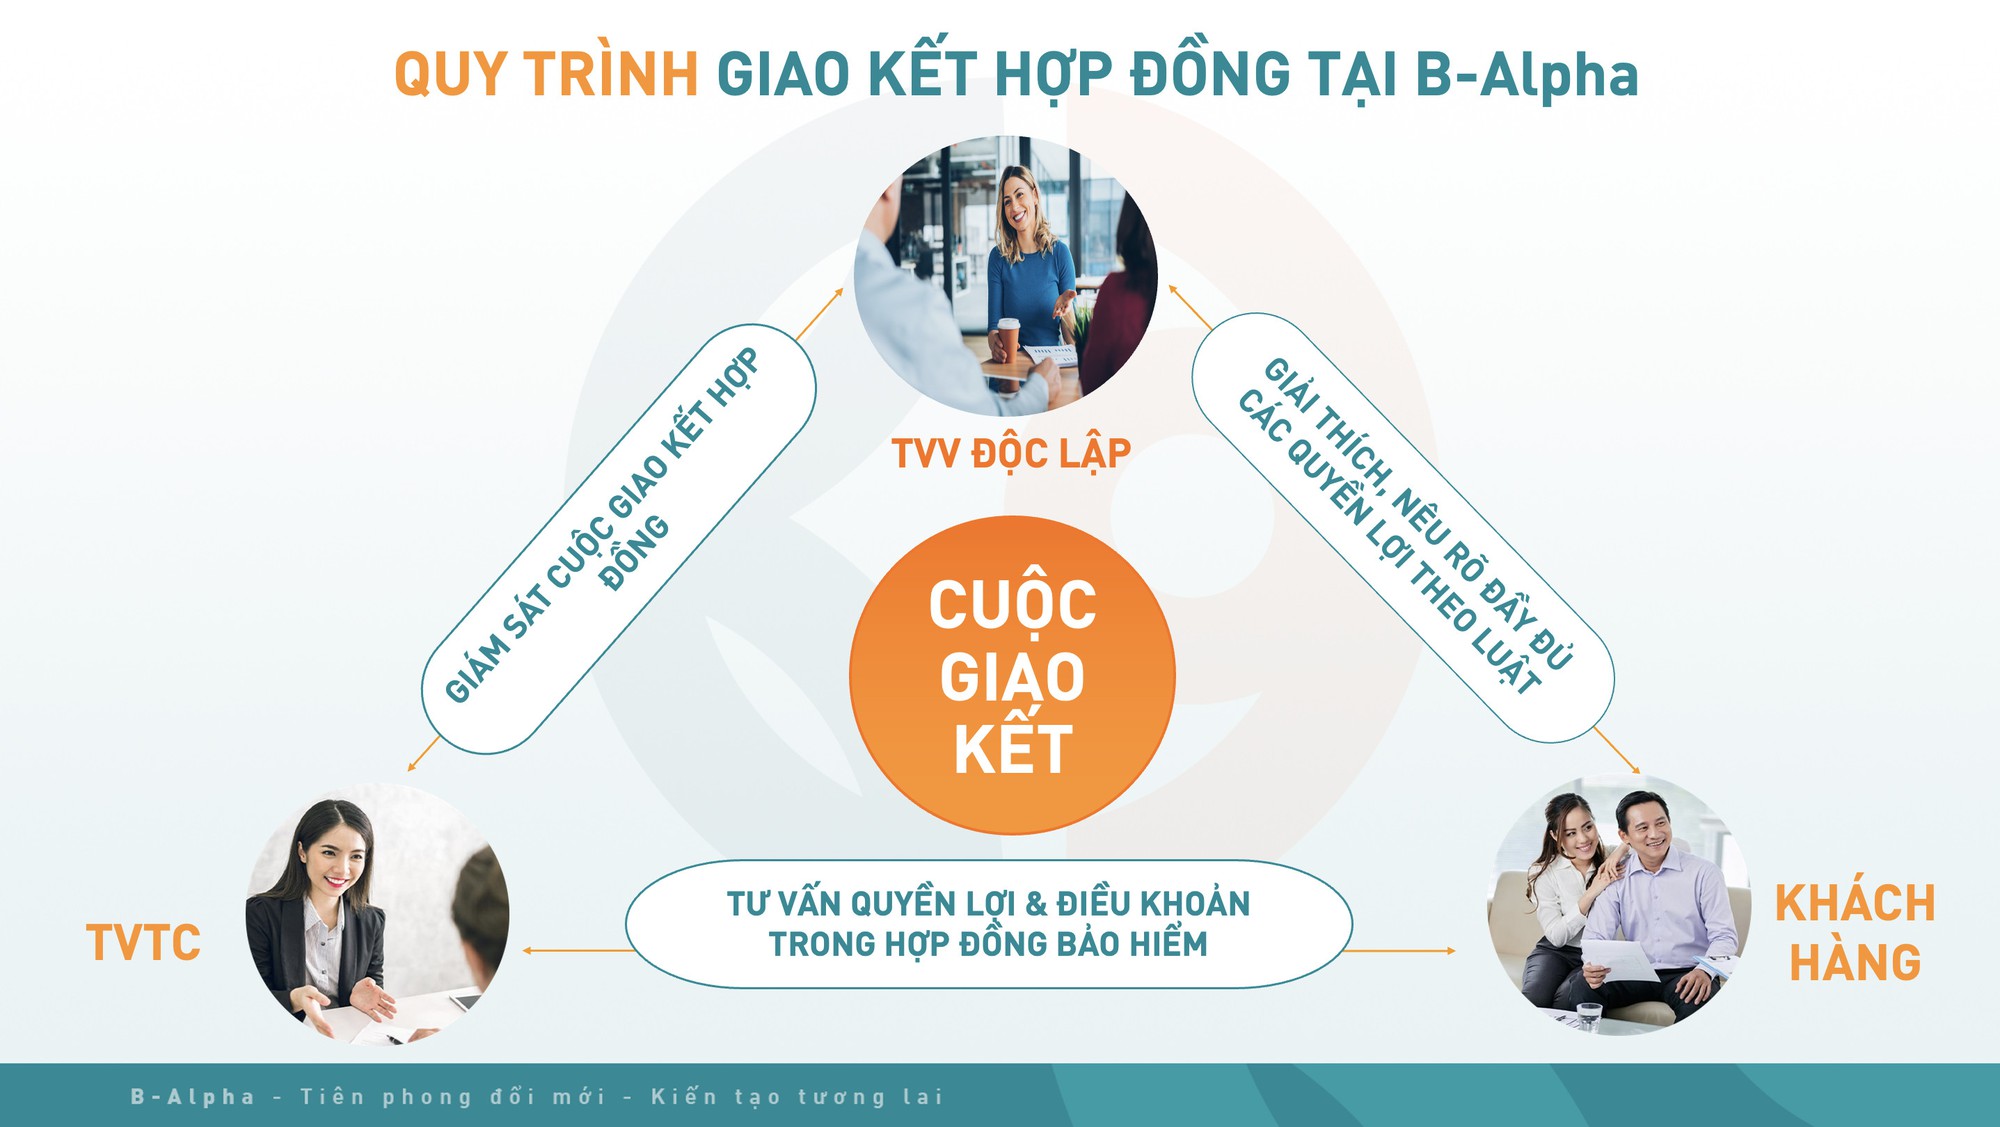 Hành trình khách hàng tại B-Alpha : Thay đổi góc nhìn của người Việt về bảo hiểm - Ảnh 2.